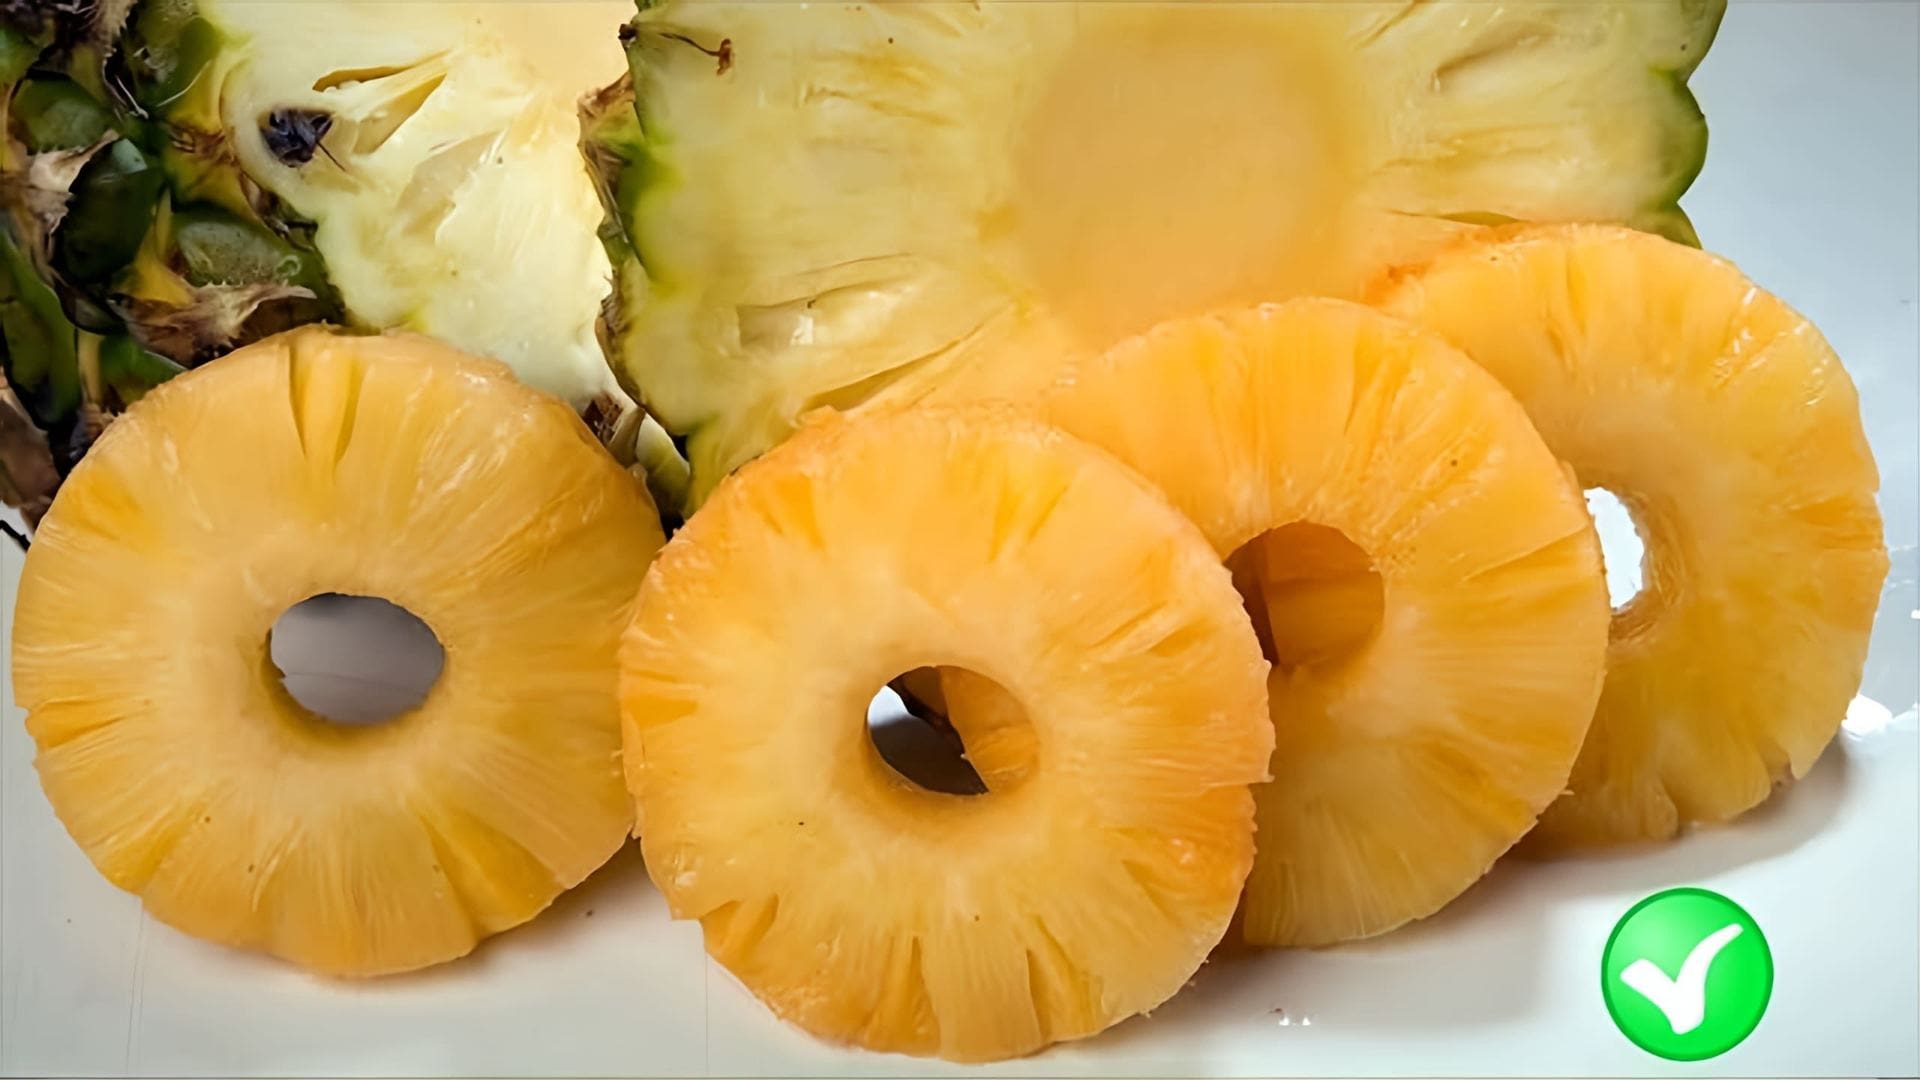 В этом видео рассказывается о пользе и вреде консервированных ананасов